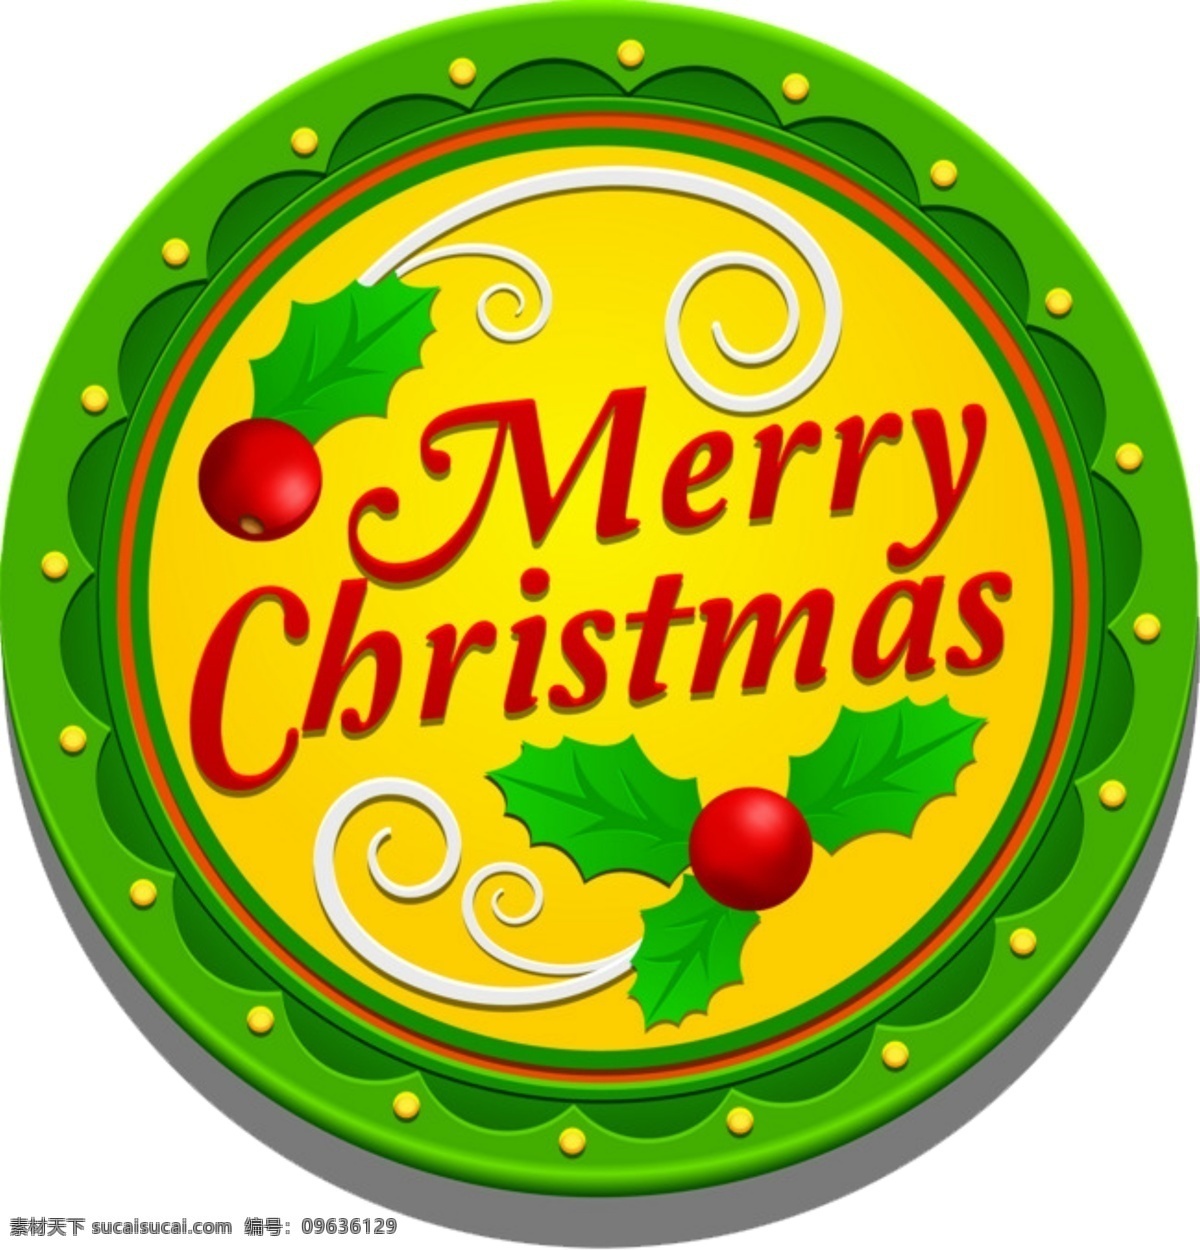 圣诞节 元素 圆形 圣诞快乐 艺术 字 图案 集合 圣诞元素 圣诞素材 圣诞艺术字 圣诞图案 彩色 扁平